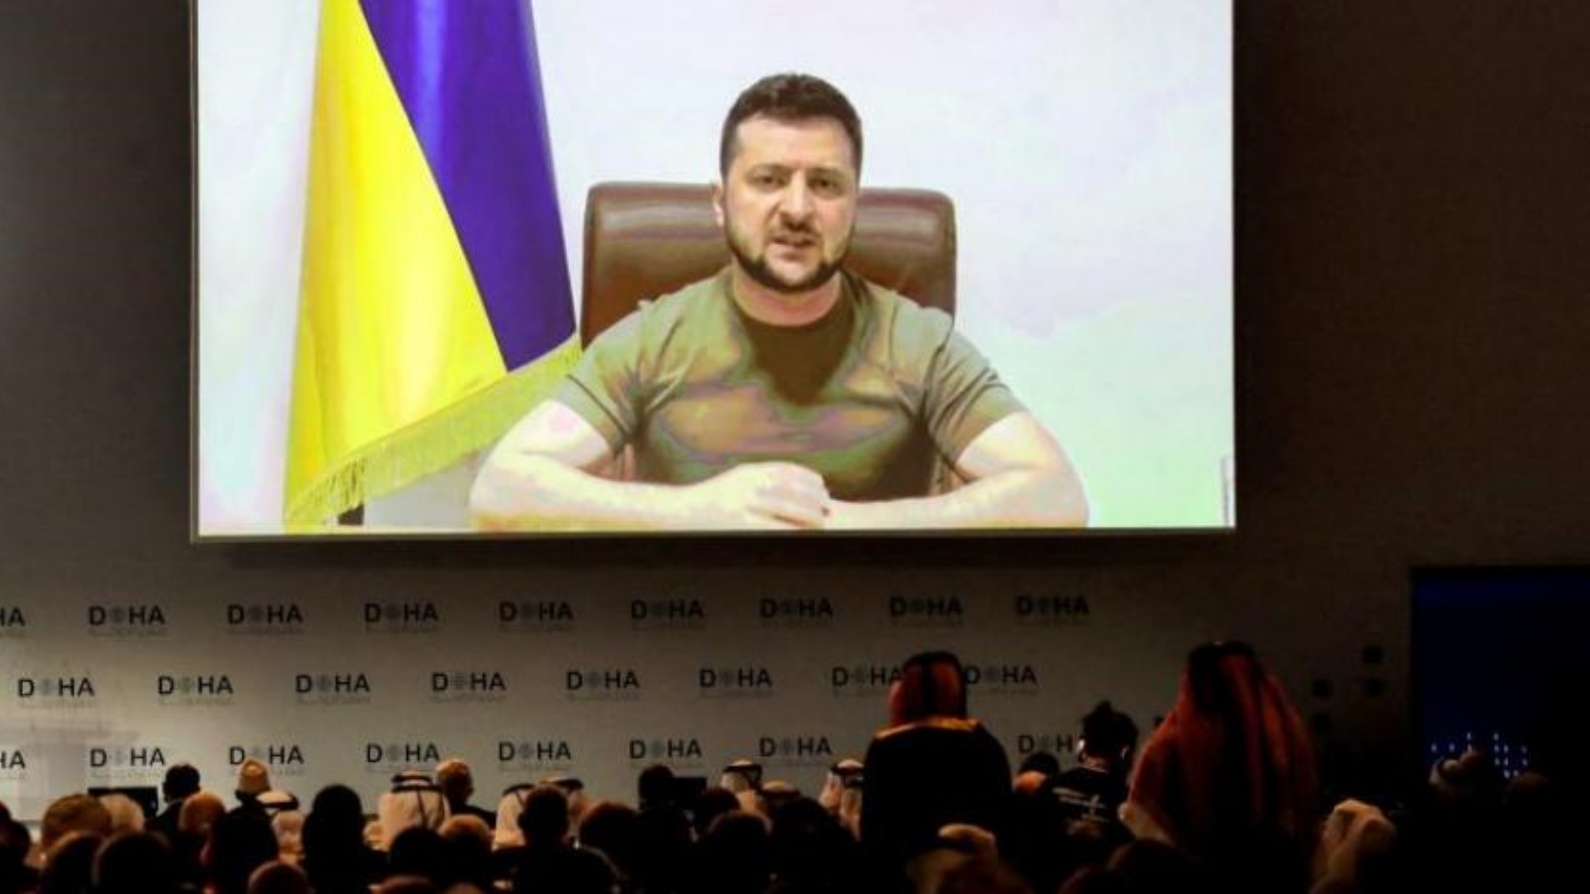 الرئيس الأوكراني فولوديمير زيلينسكي يتحدث في مؤتمر سياسي بالدوحة